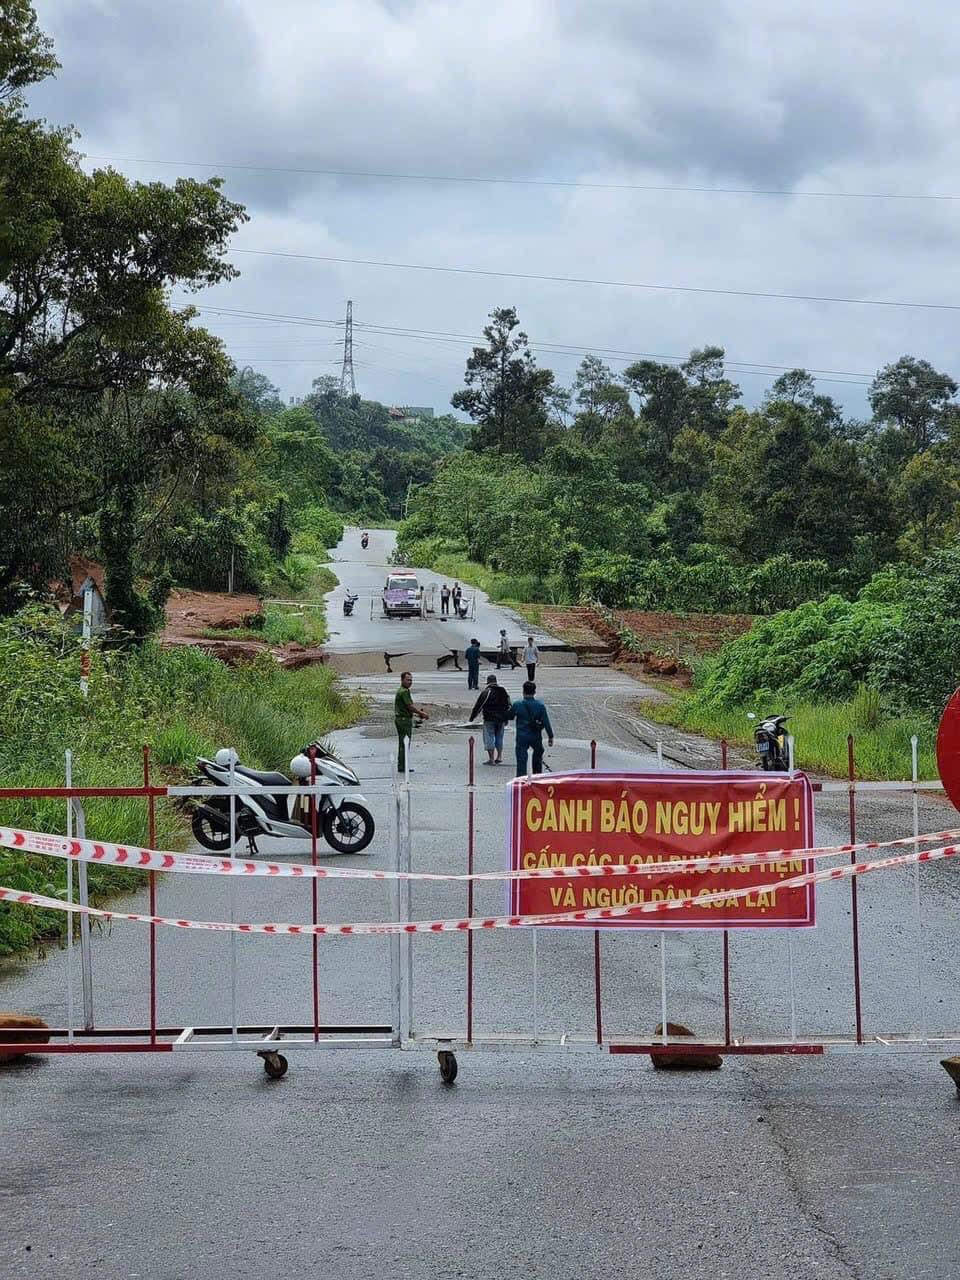 Chính quyền địa phương tổ chức rào chắn không cho các phương tiện vào đường tránh TP Bảo Lộc do bị sụp lún. Ảnh: Võ Tùng